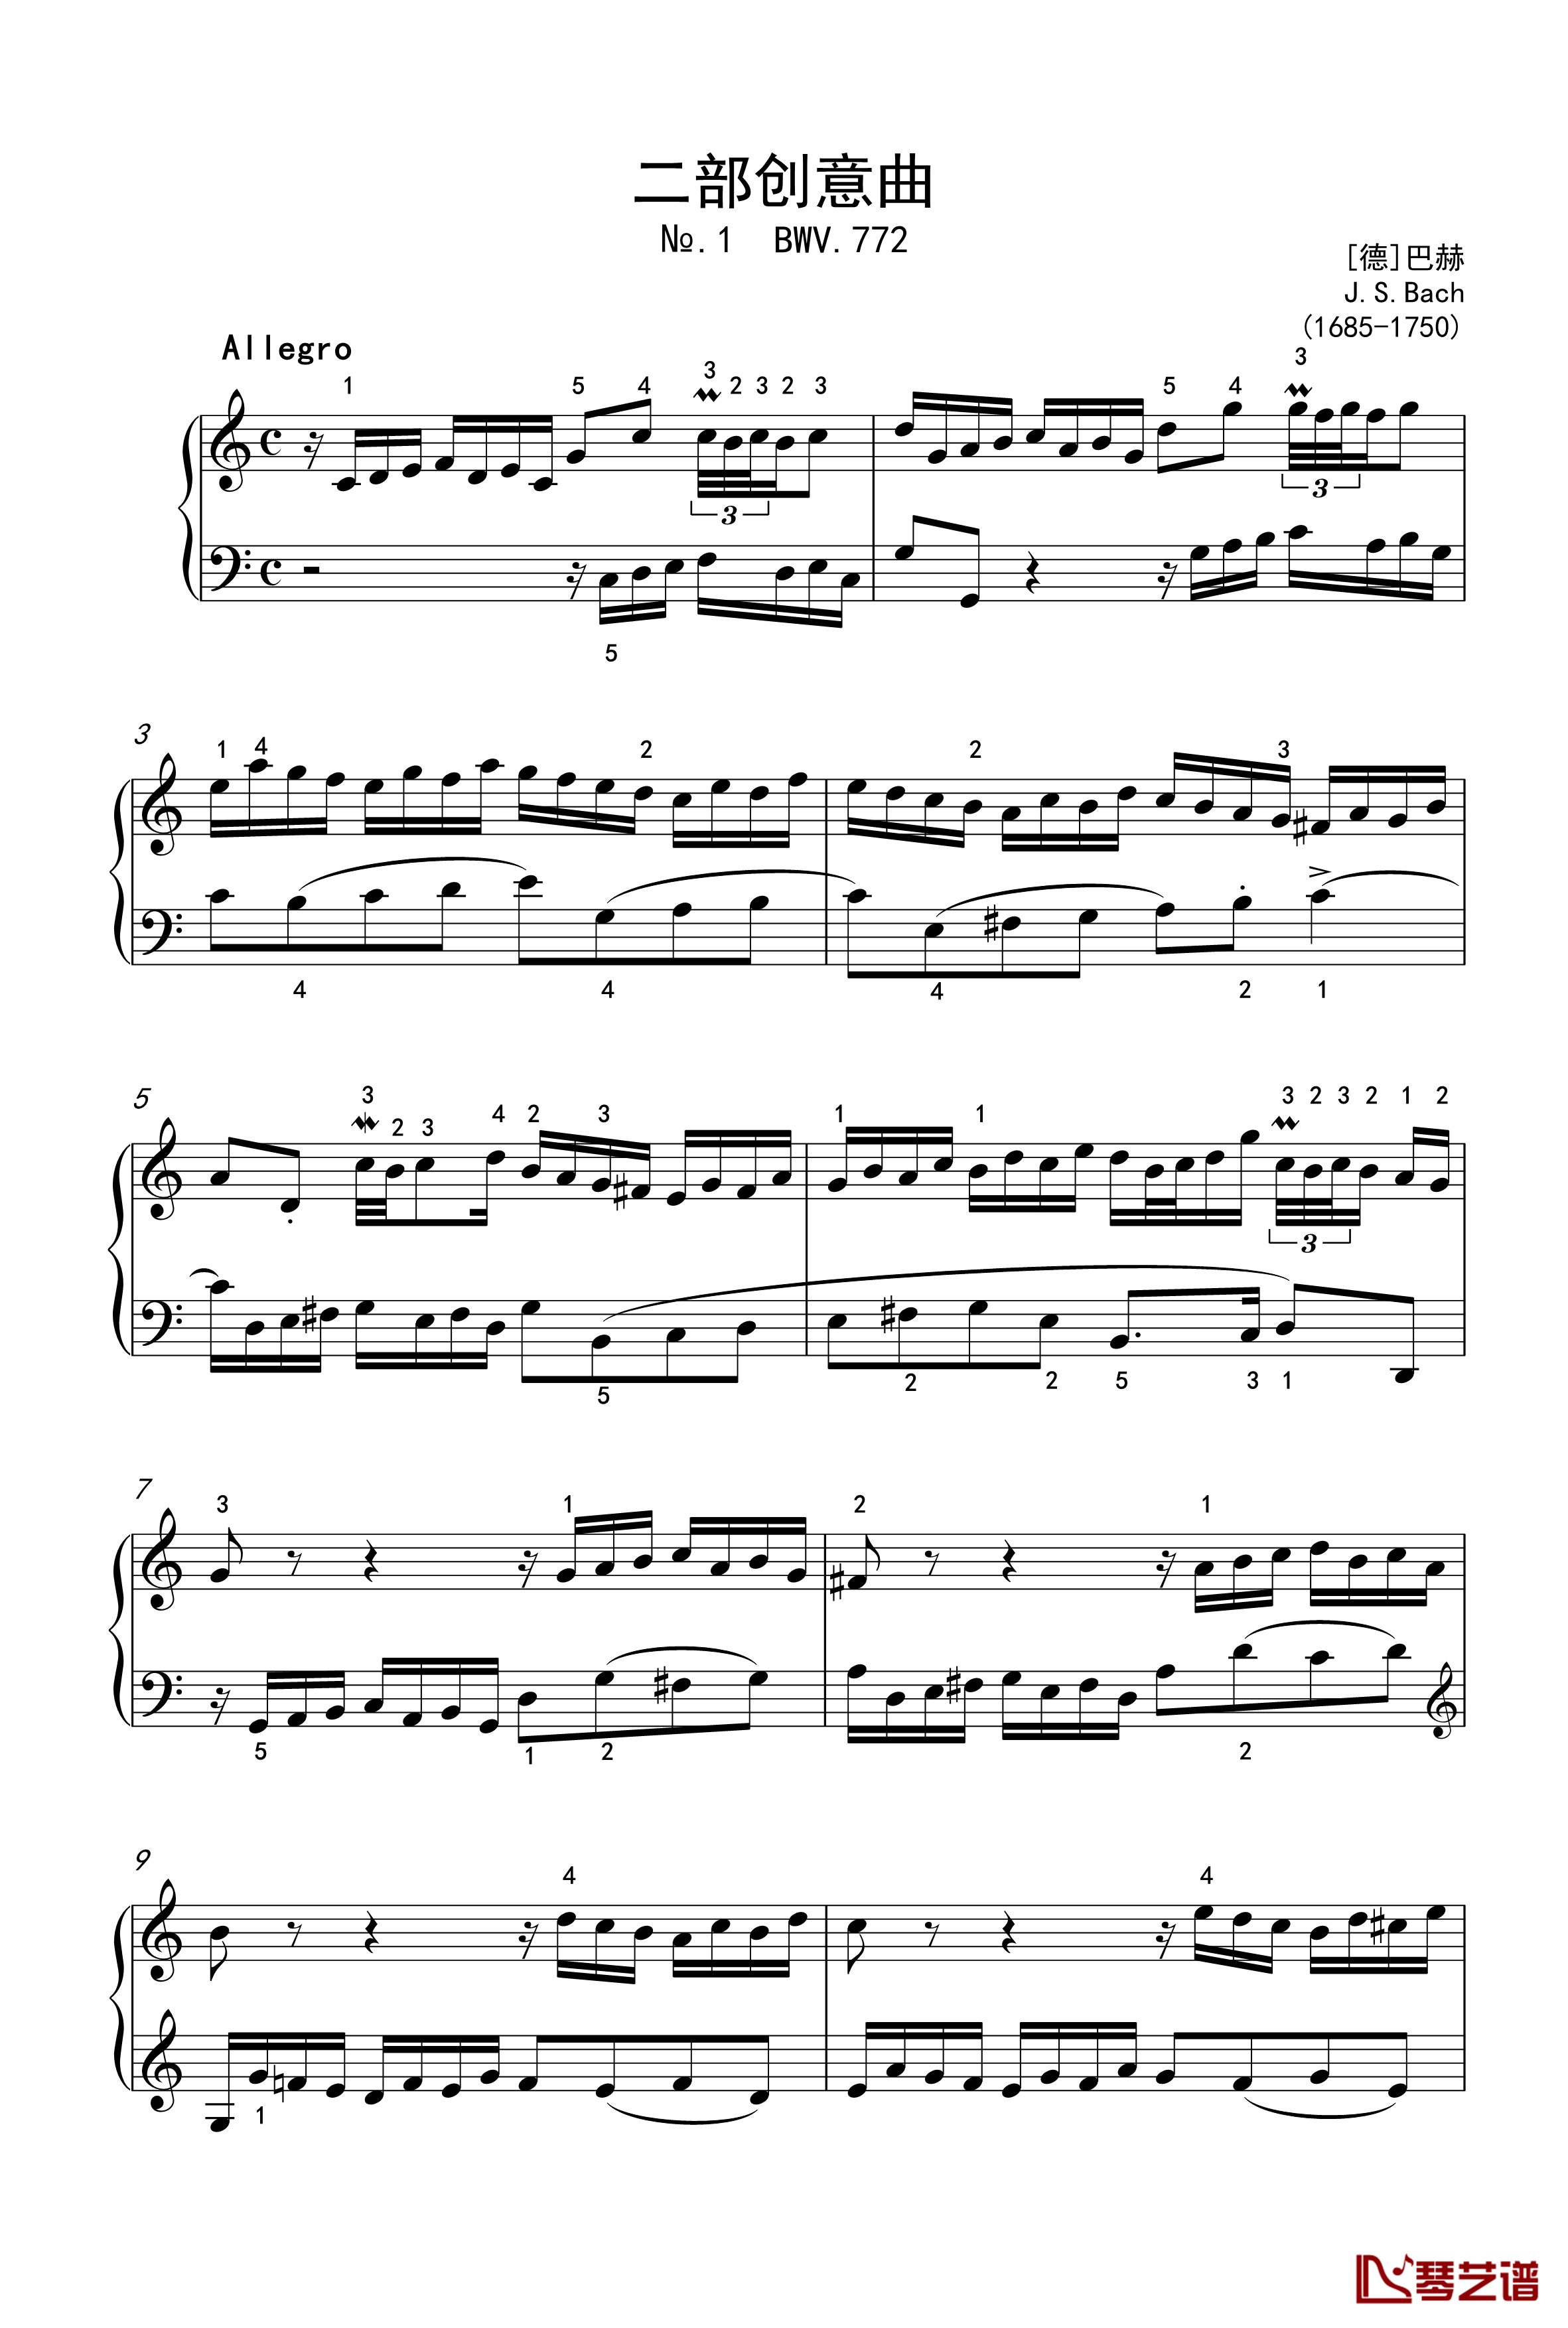 二部创意曲钢琴谱-1-BWV-772-巴赫-P.E.Bach1